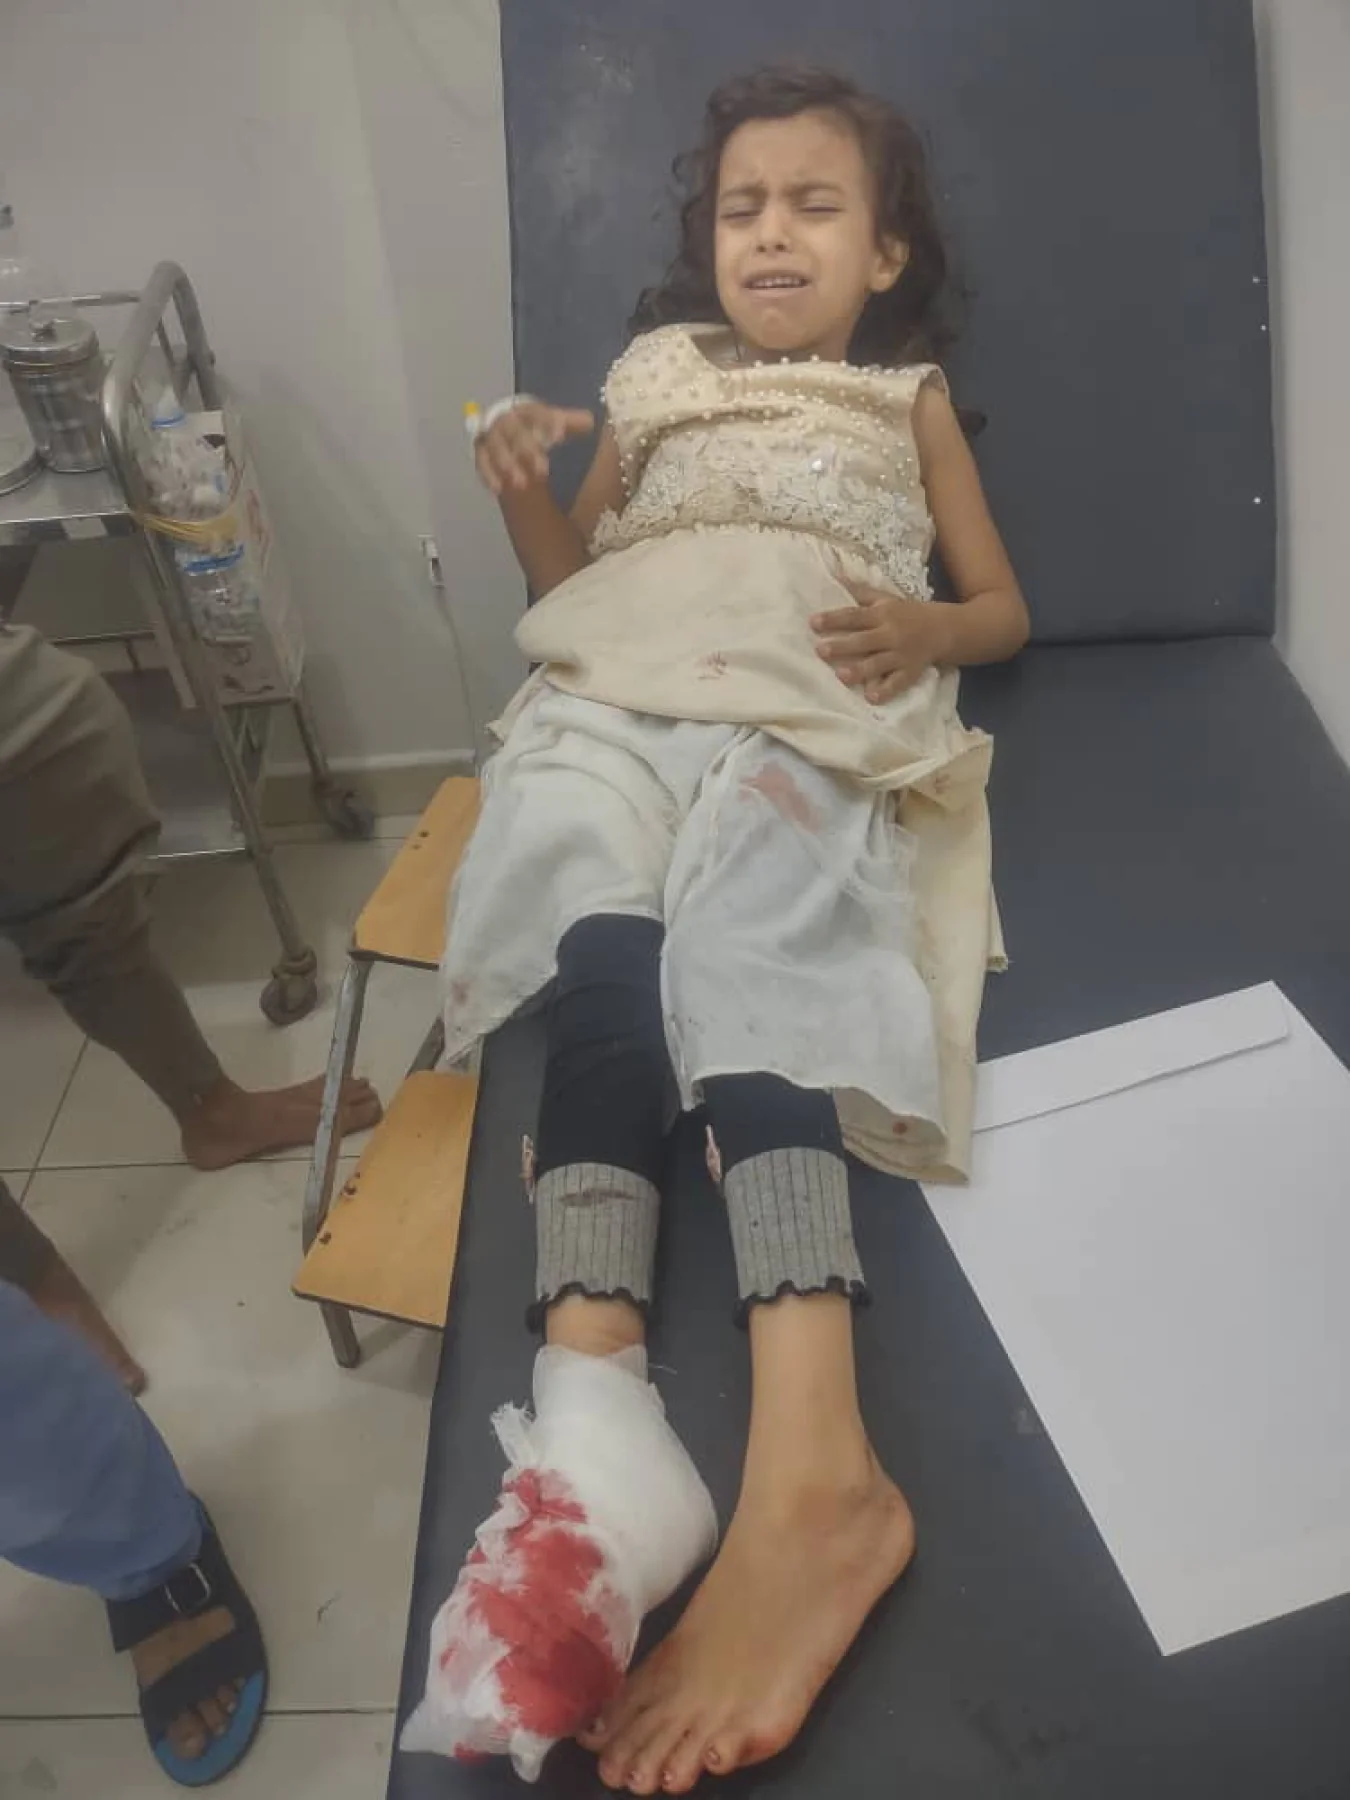 اصابة طفلة في قدمها برصاص قناص بمحافظة تعز